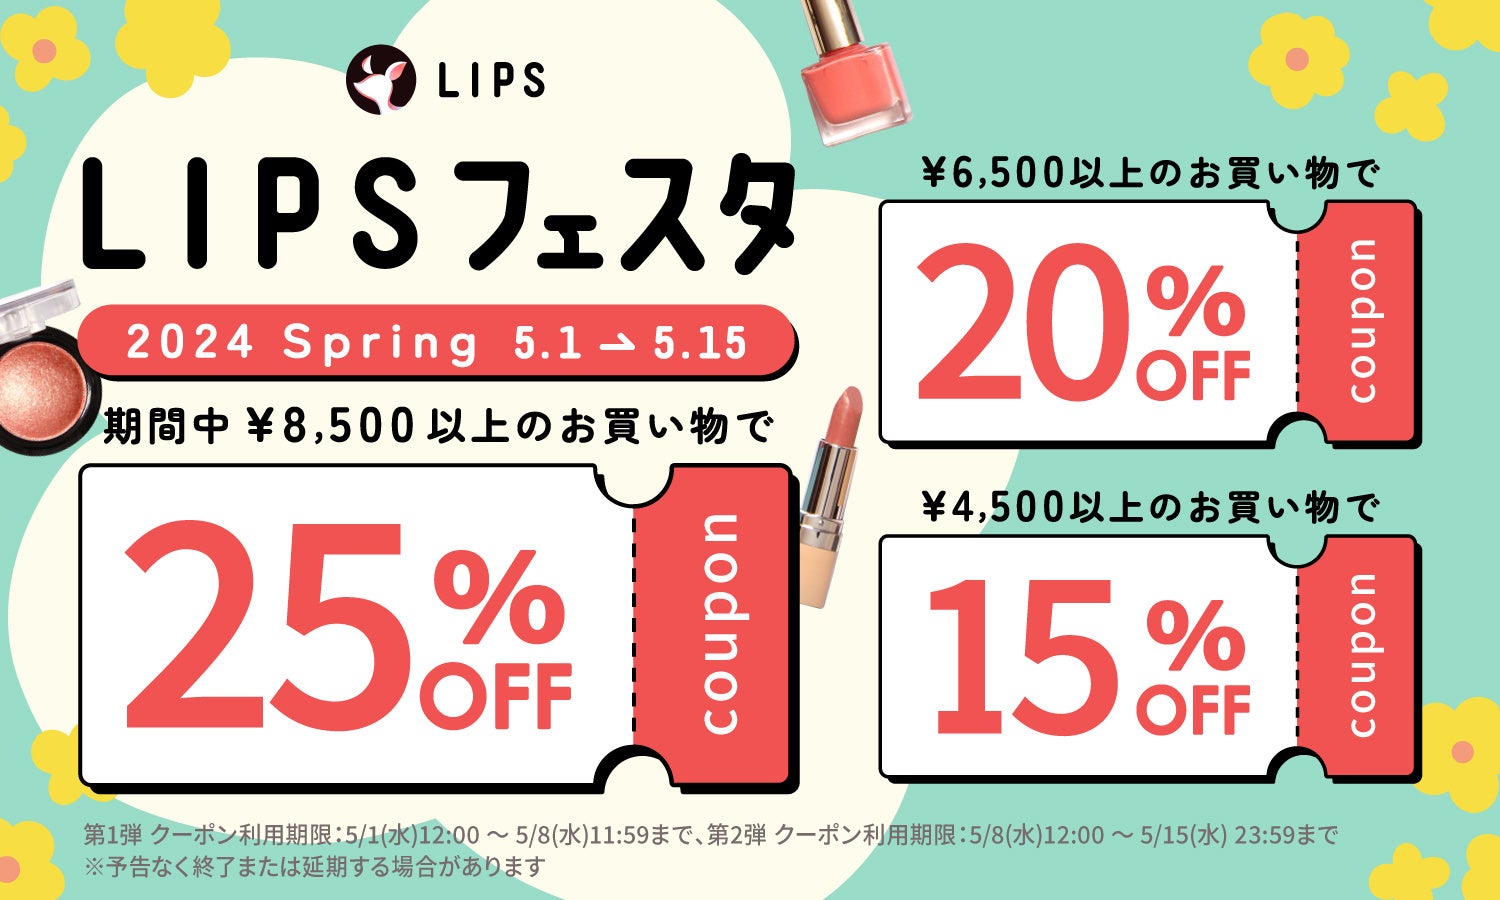 【LIPSショッピング】コスメをお得に購入できる2週間の限定キャンペーン速報！〜LIPSフェスタ 2024 Spring〜